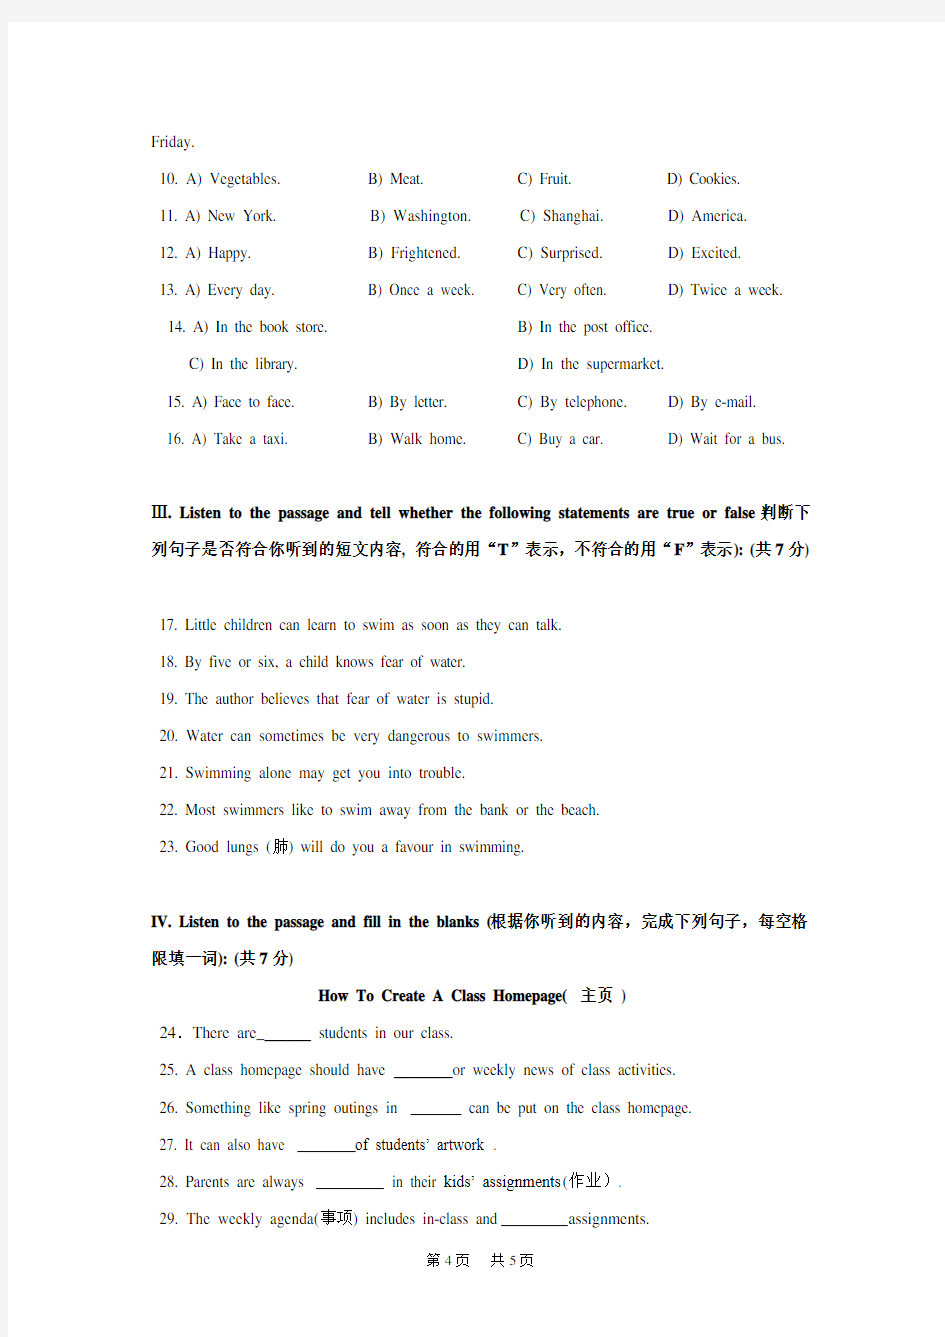 中考模拟英语试卷及答案 (2)